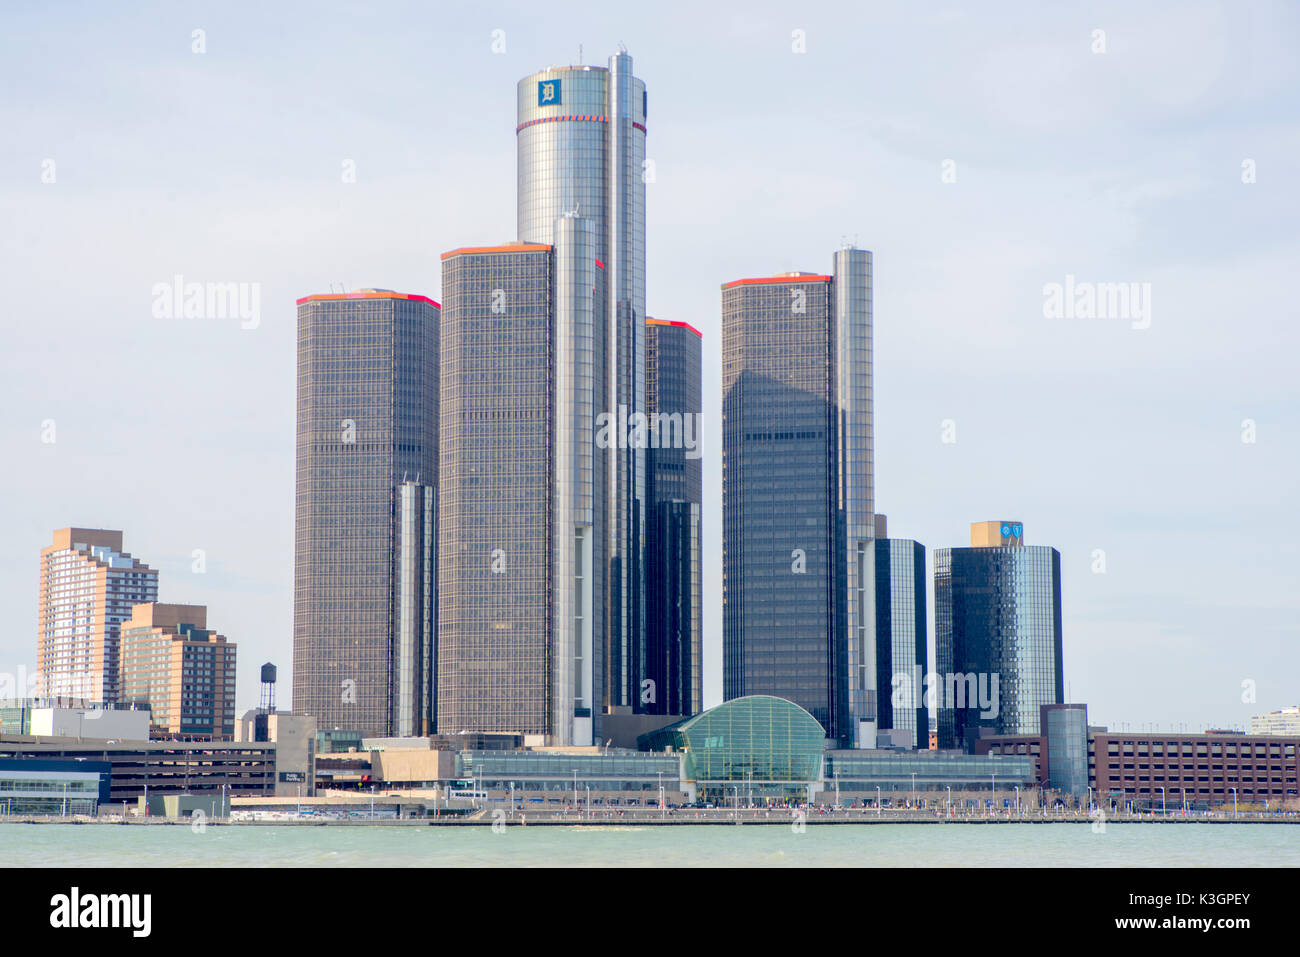 Detroit, MI - April 8, 2017: General Motors Building, gm Headquarters aka Renaissance Center in der Innenstadt von Detroit. Stockfoto